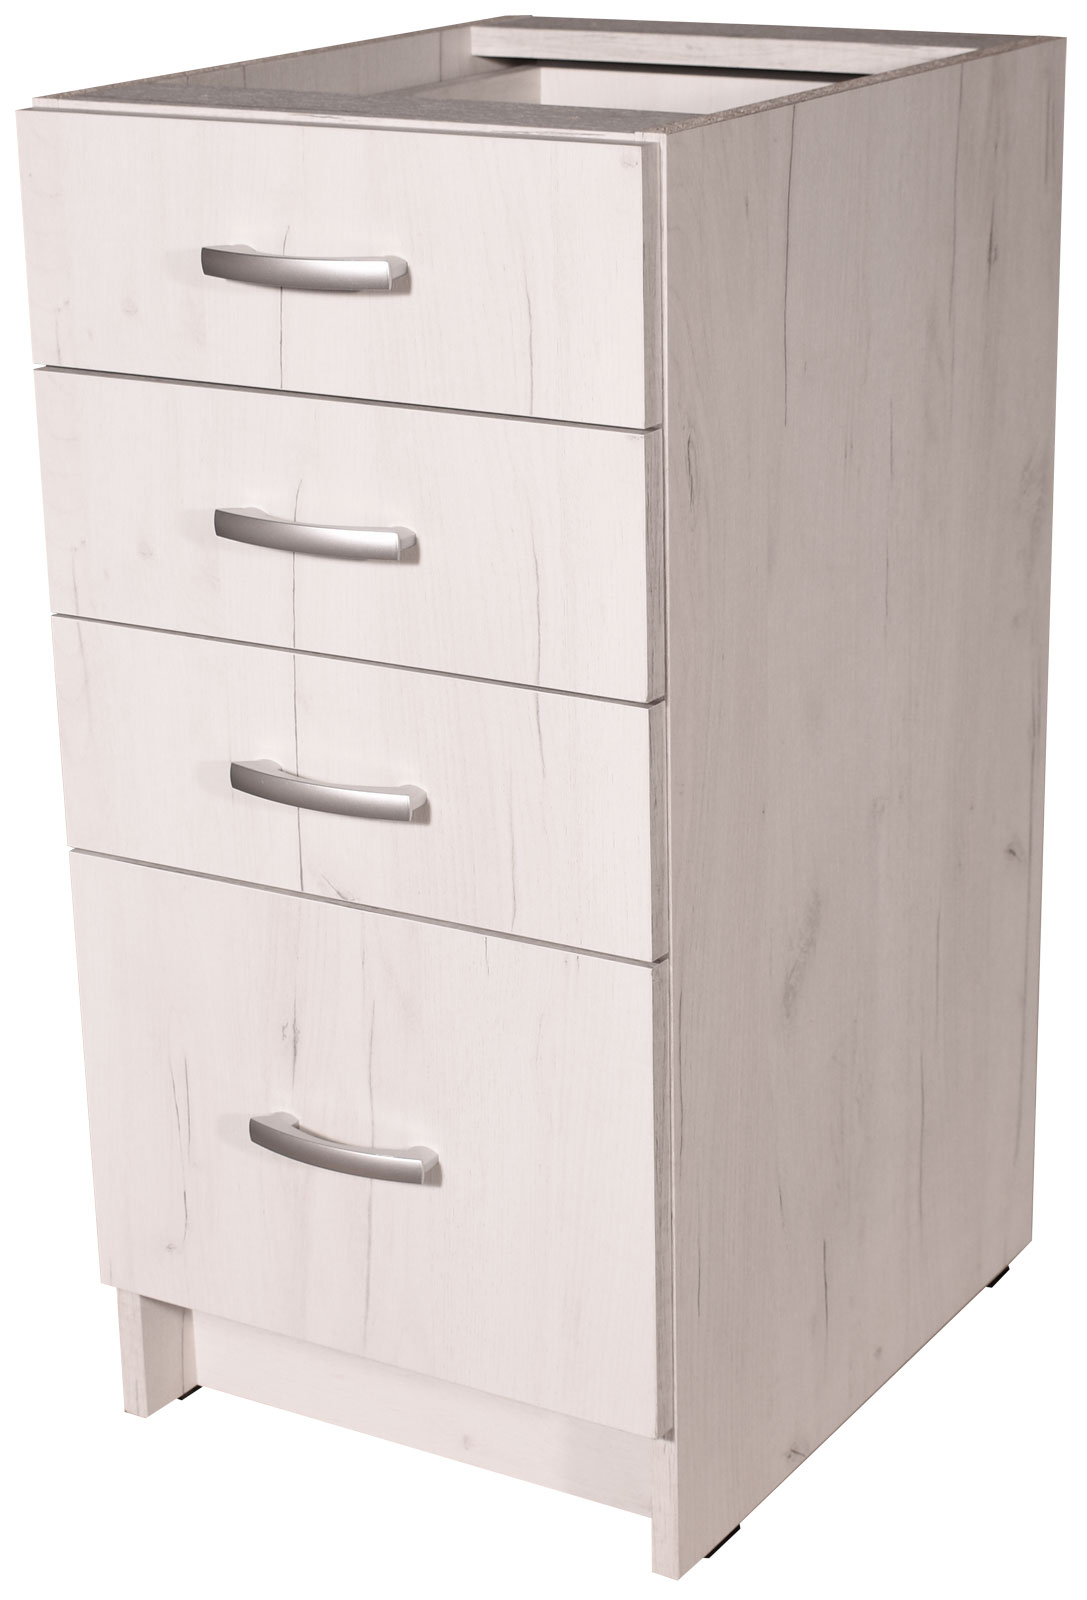 Kuchyňská skříňka spodní se šuplíky barva Craft bílý 40 cm